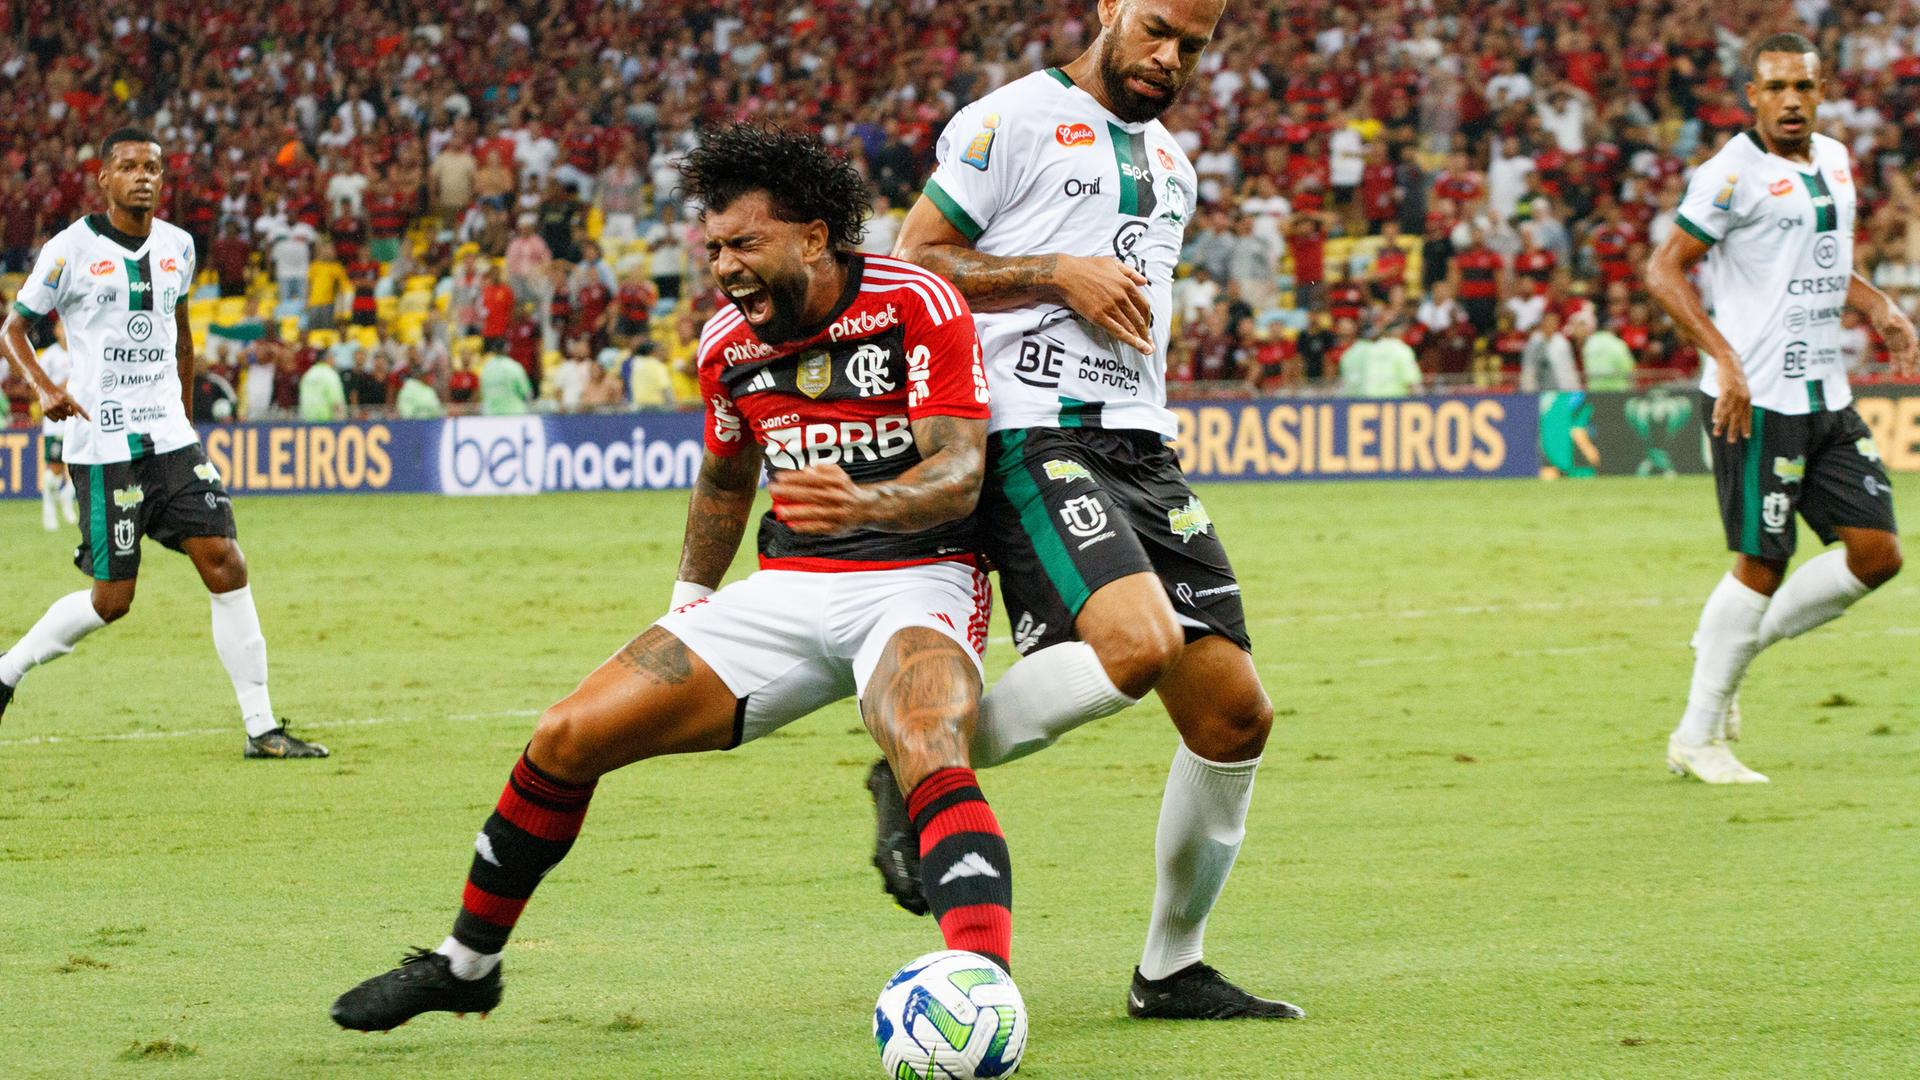 Szene aus dem Spiel Flamengo Rio de Janeiro gegen Maringa